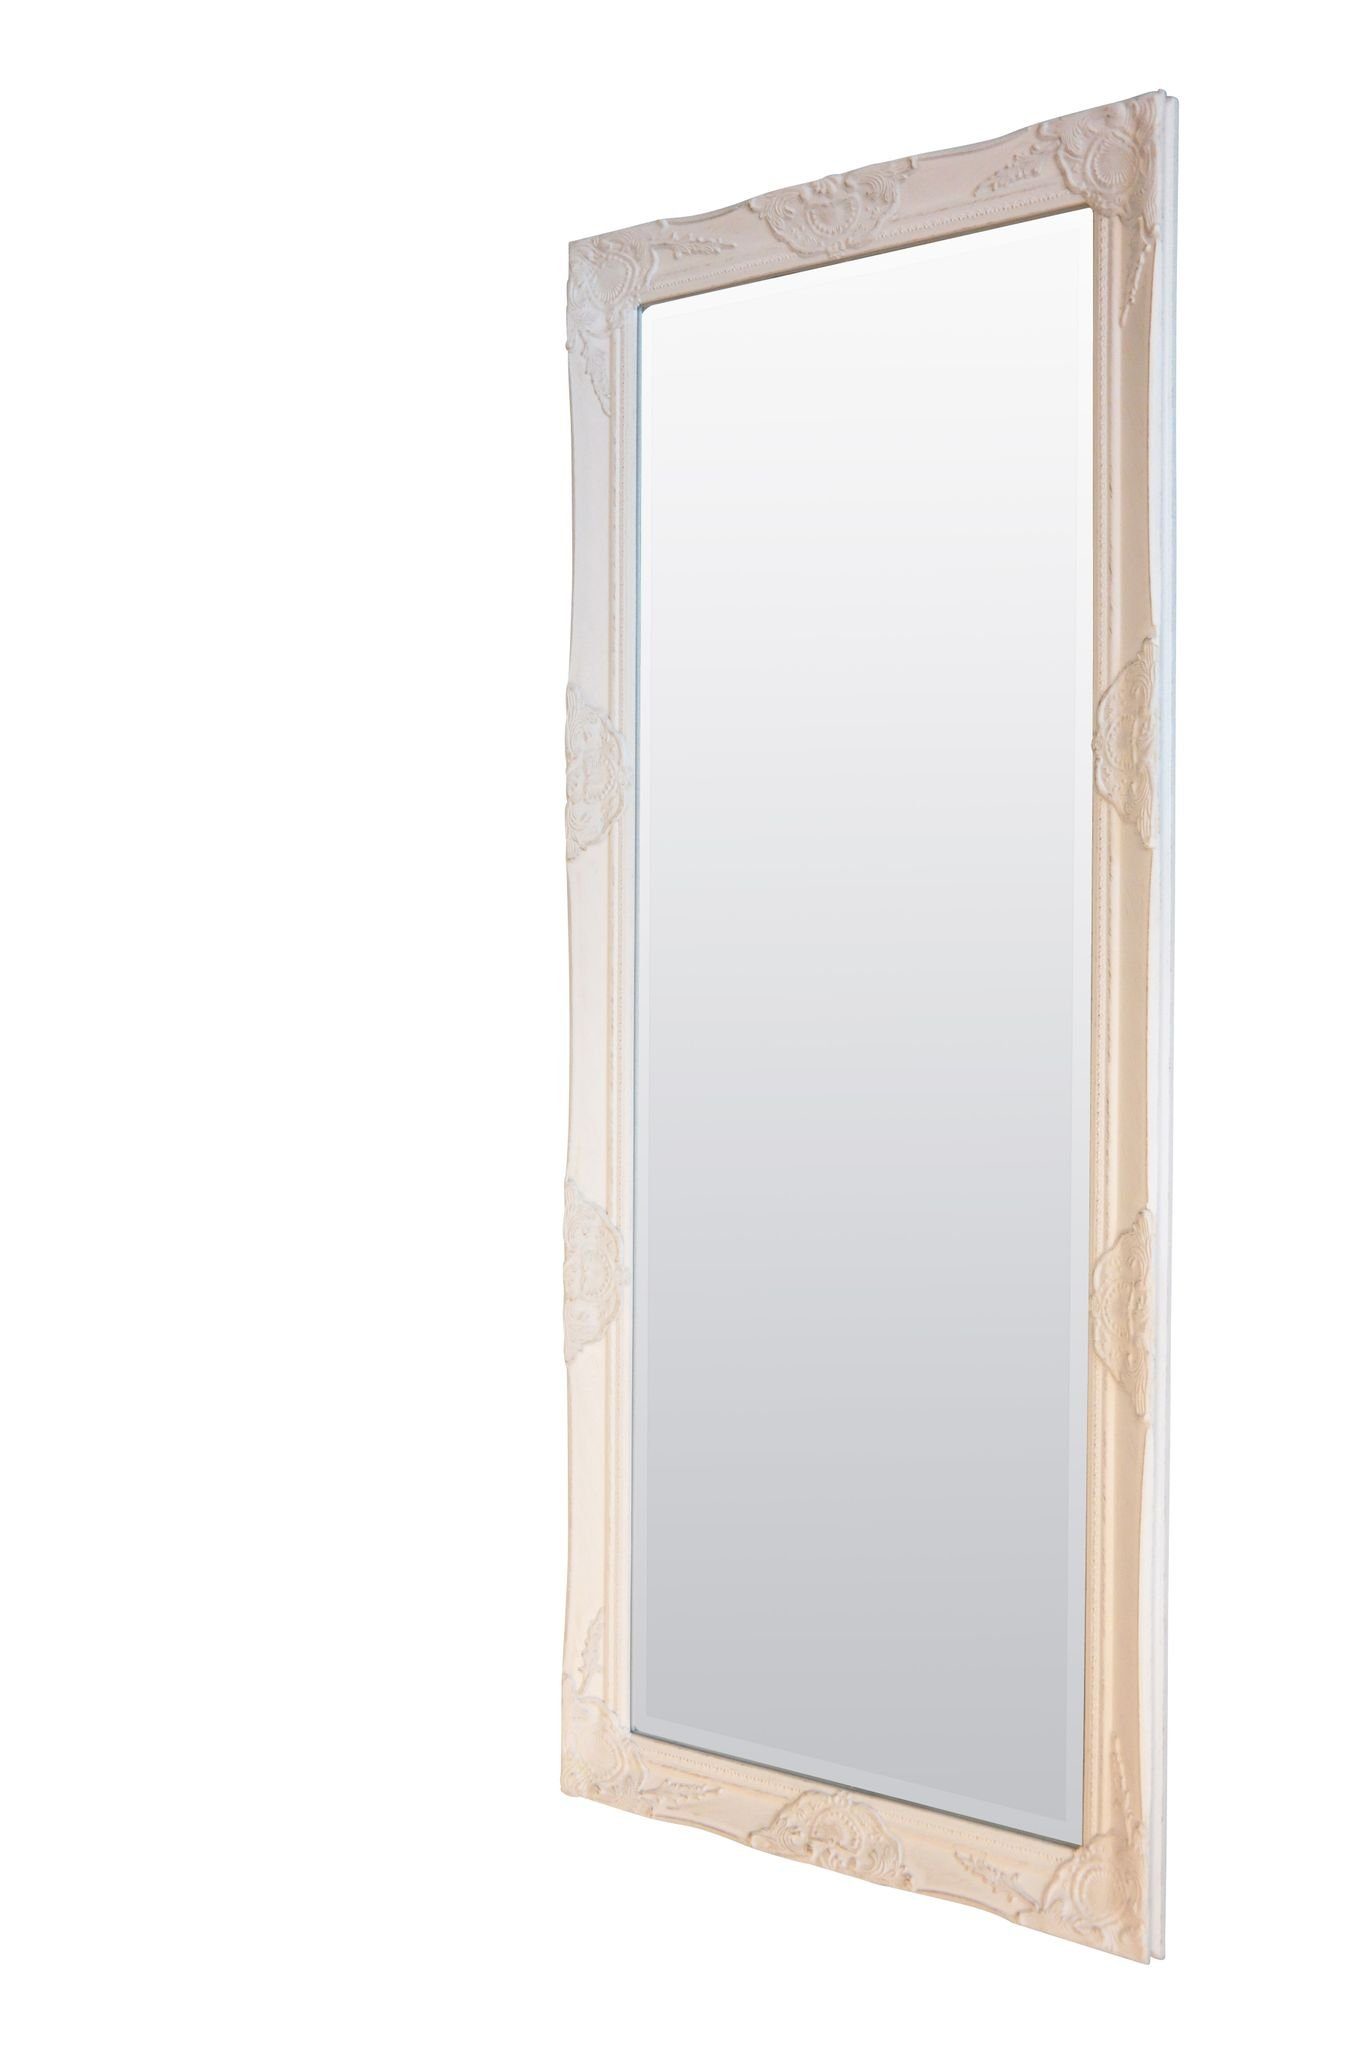 elbmöbel Wandspiegel Wandspiegel cm 182x62x5 187x62x7 Ganzkörperspiegel white, Stil Vintage Spiegel: weiß